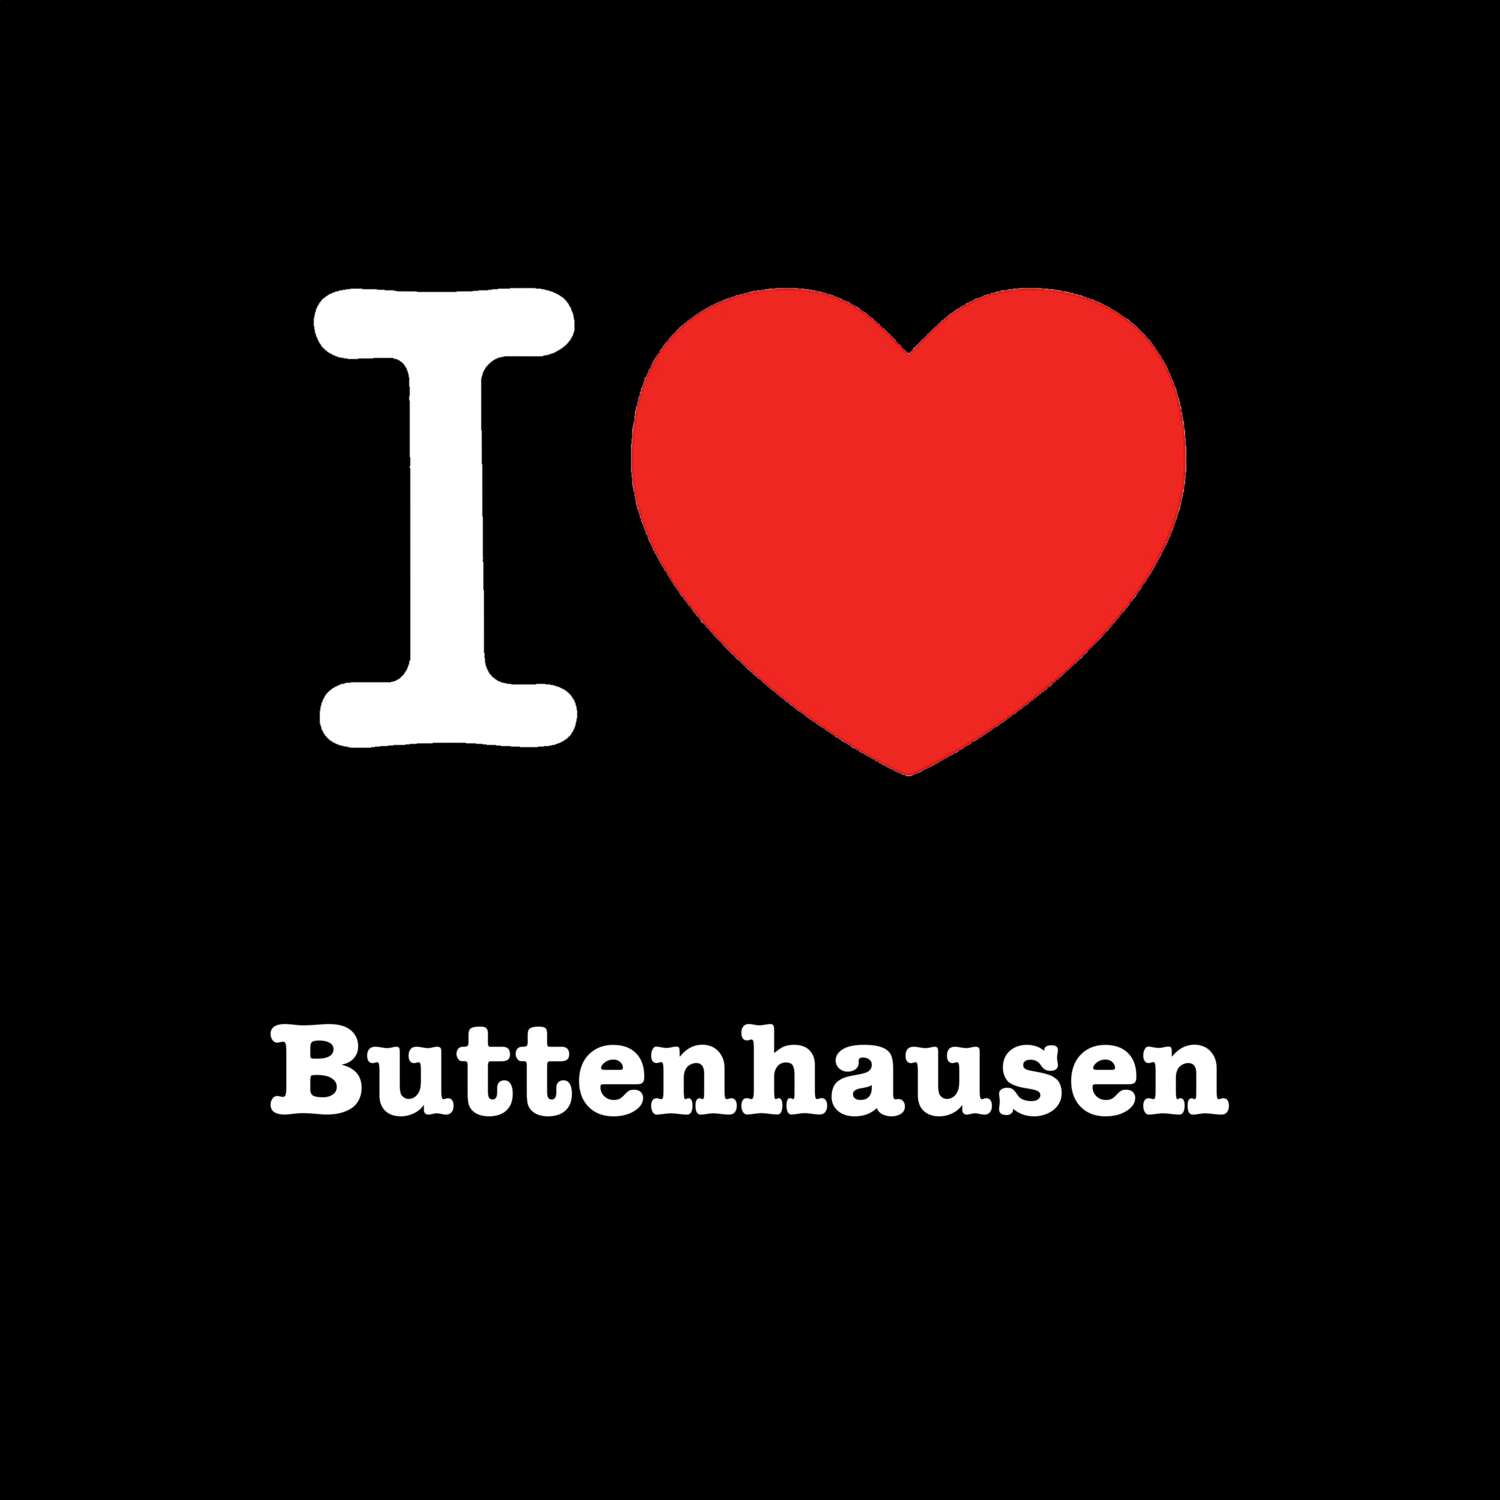 Buttenhausen T-Shirt »I love«